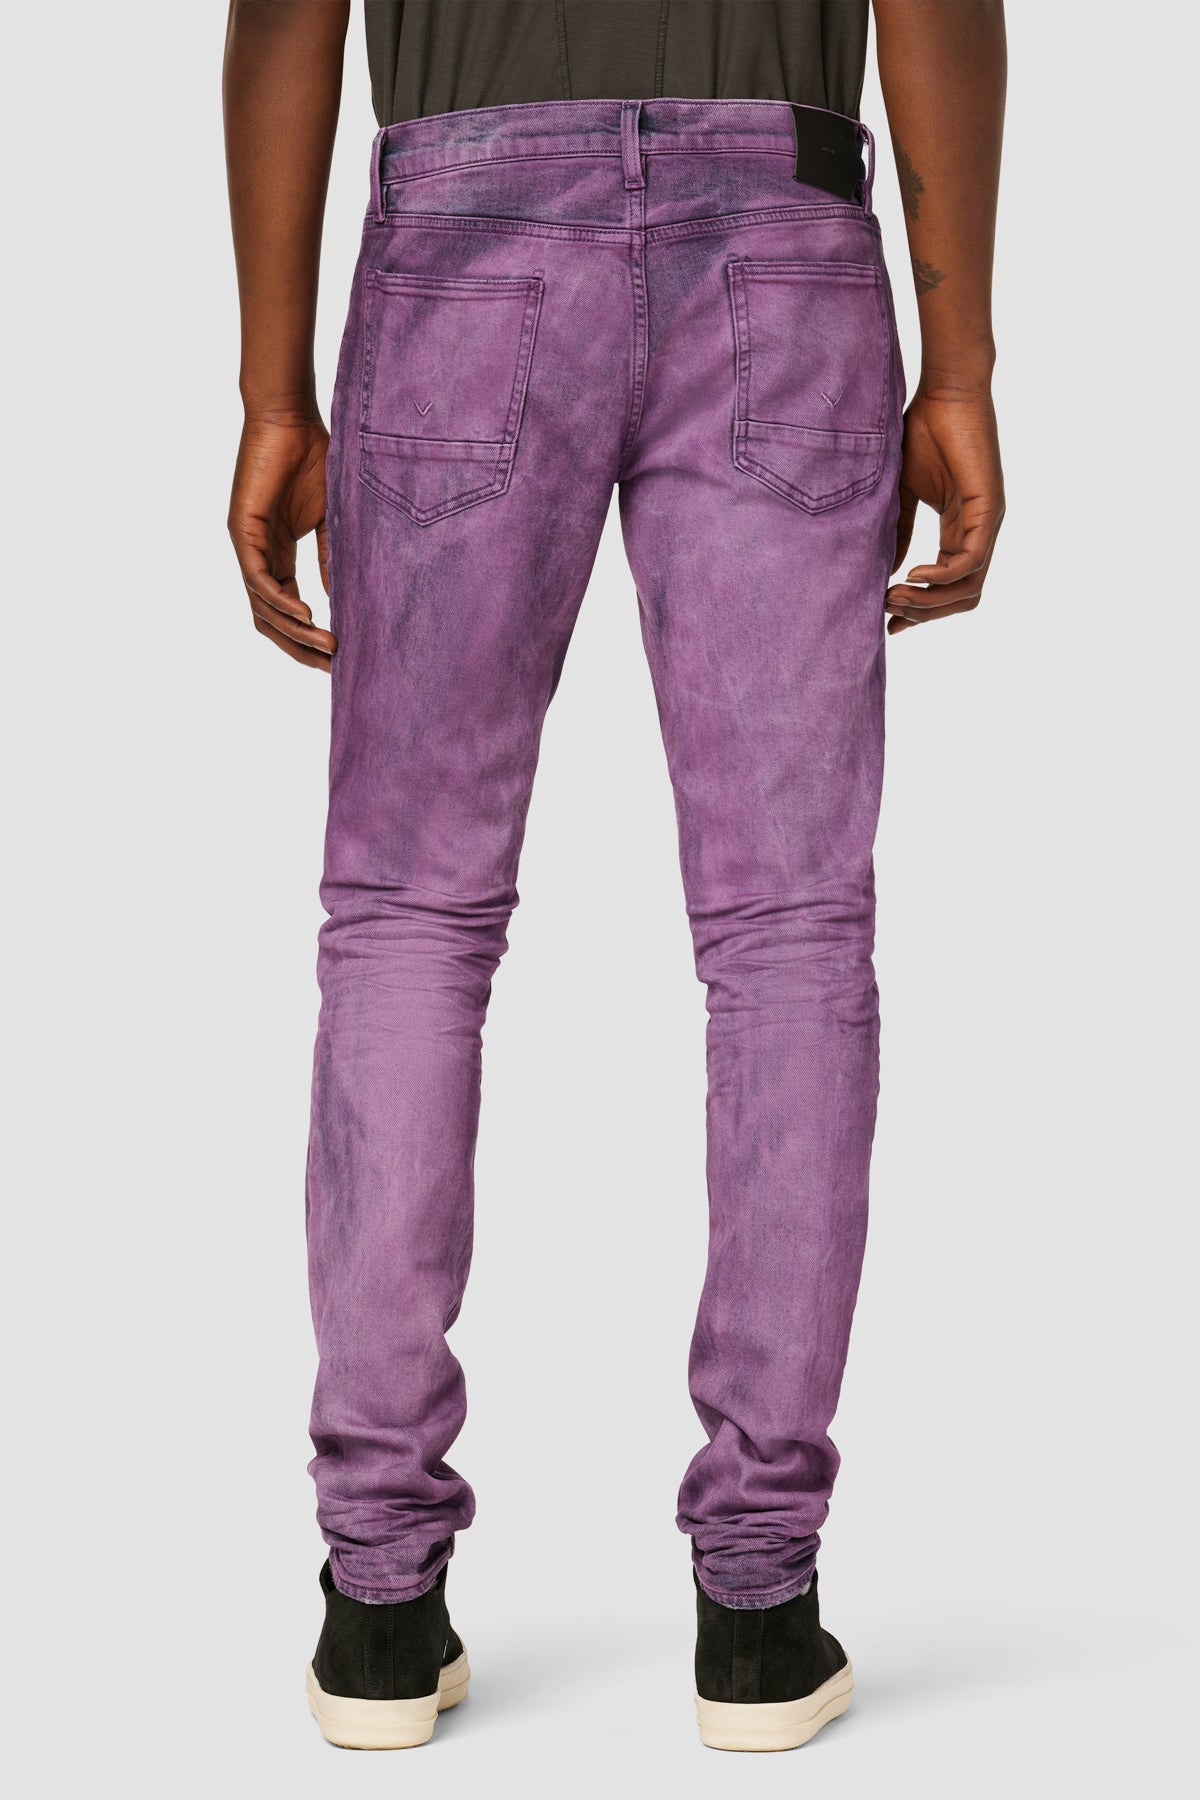 Dark Blue purple Jeans size 30 $120.00 🚨🚨🚨 🚨 Light Blue Purple Jeans  size 30 $120.00 🚨SOLD🚨🚨🚨 Olive Wax Purple